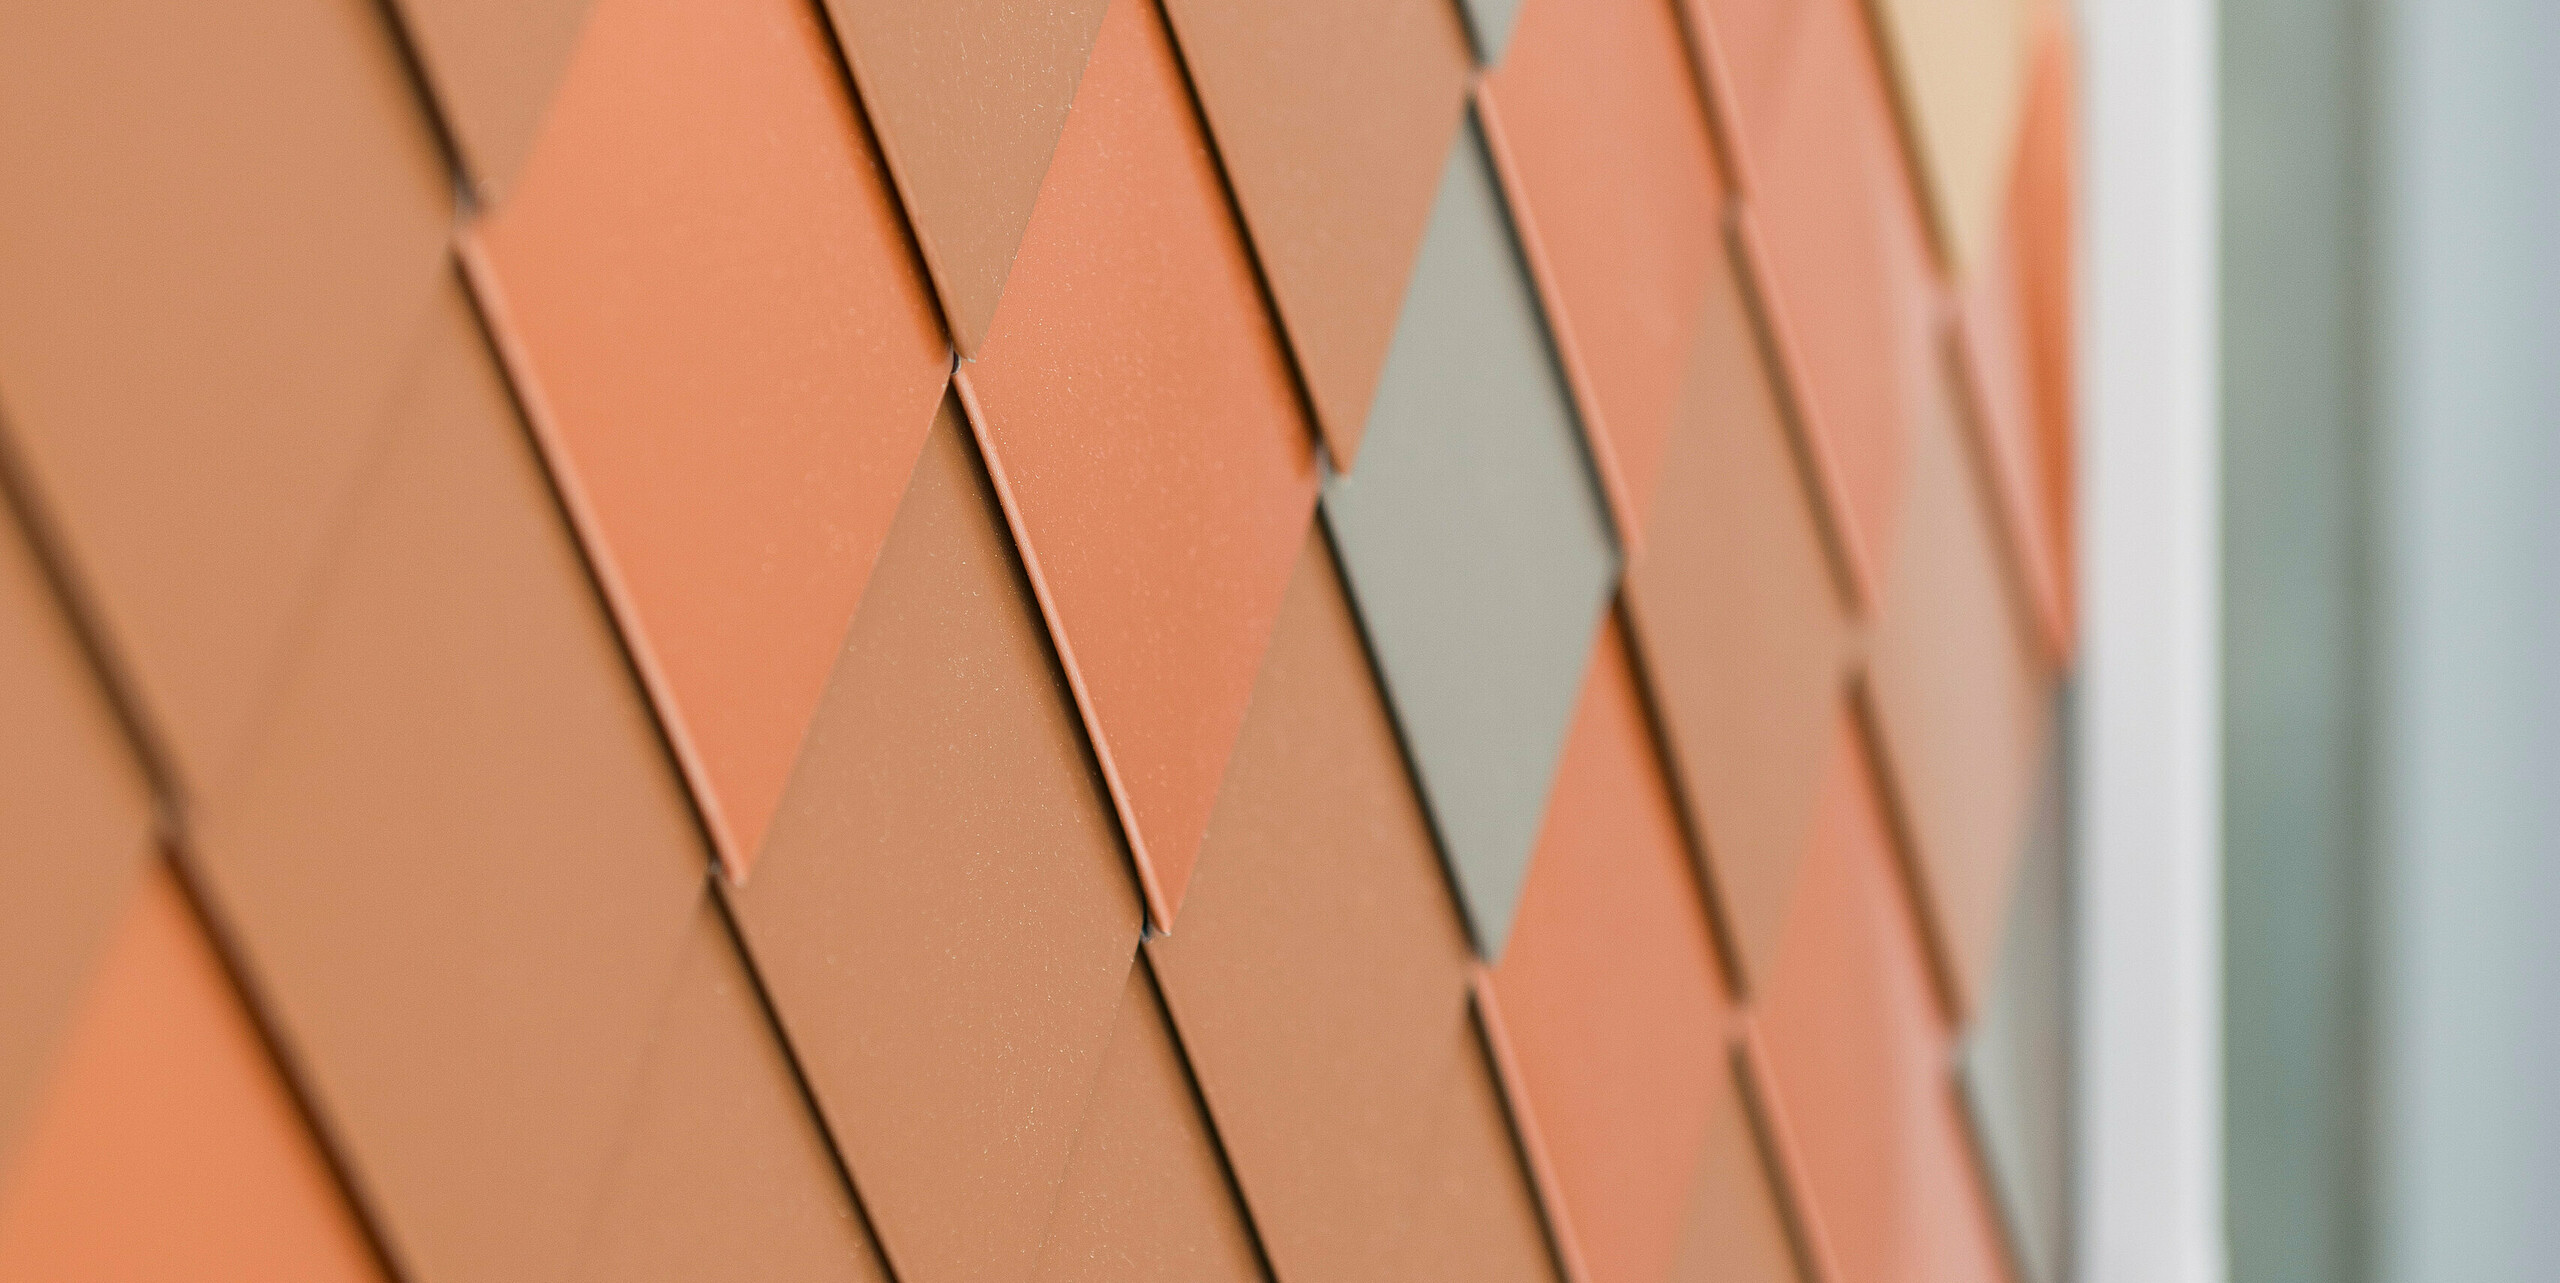 Detailansicht einer modernen Aluminiumfassade von PREFA mit einem geometrischen Muster in verschiedenen Farbtönen. Die kleinen Aluminiumteile aus FALZONAL sind diamantförmig angeordnet und erzeugen eine dreidimensionale Optik, die Struktur und Farbtiefe betont